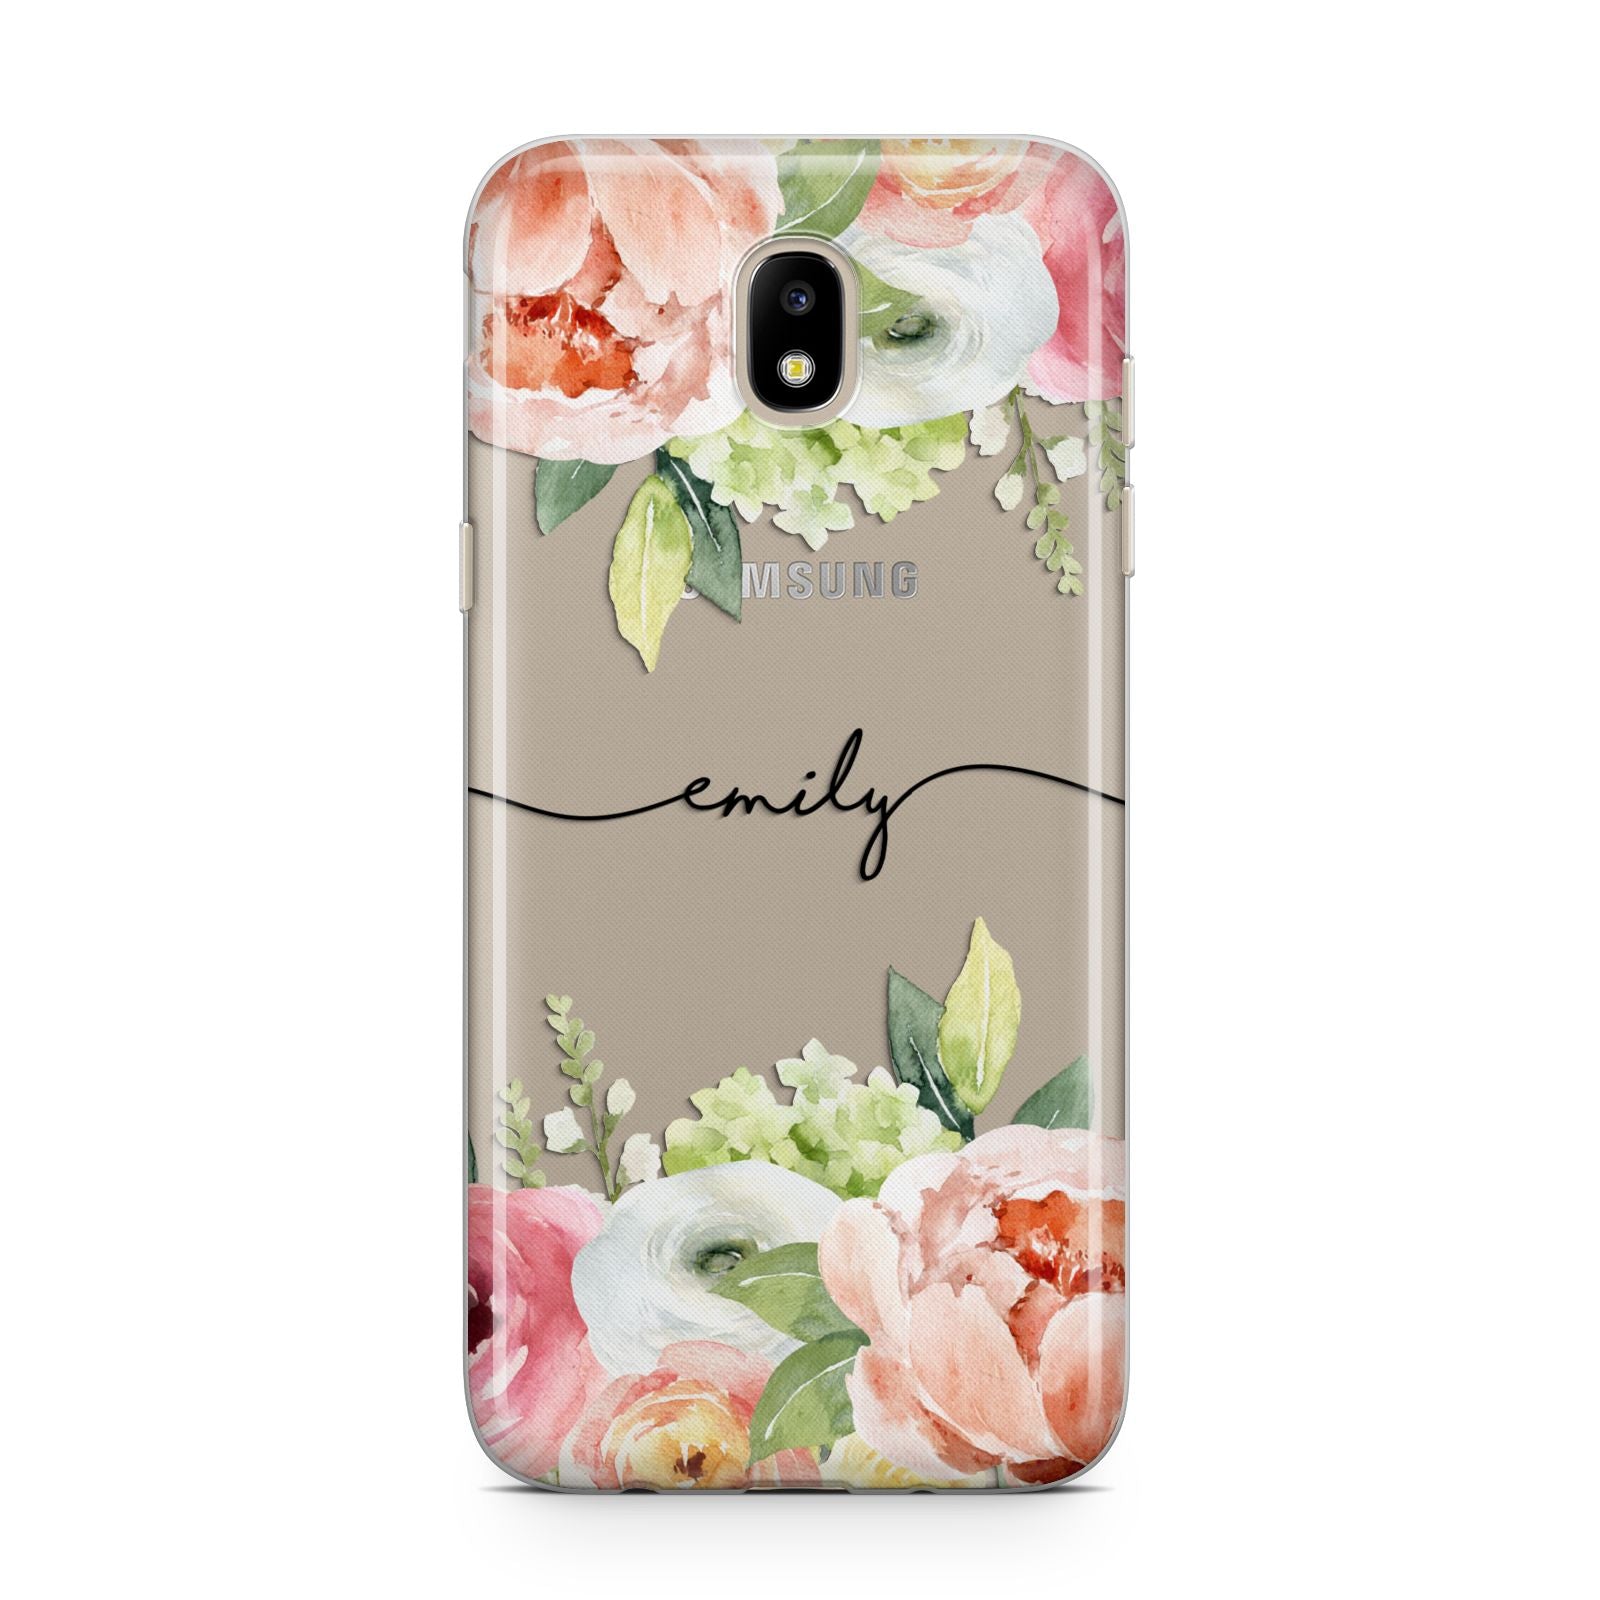 Personalised Flowers Samsung J5 2017 Case